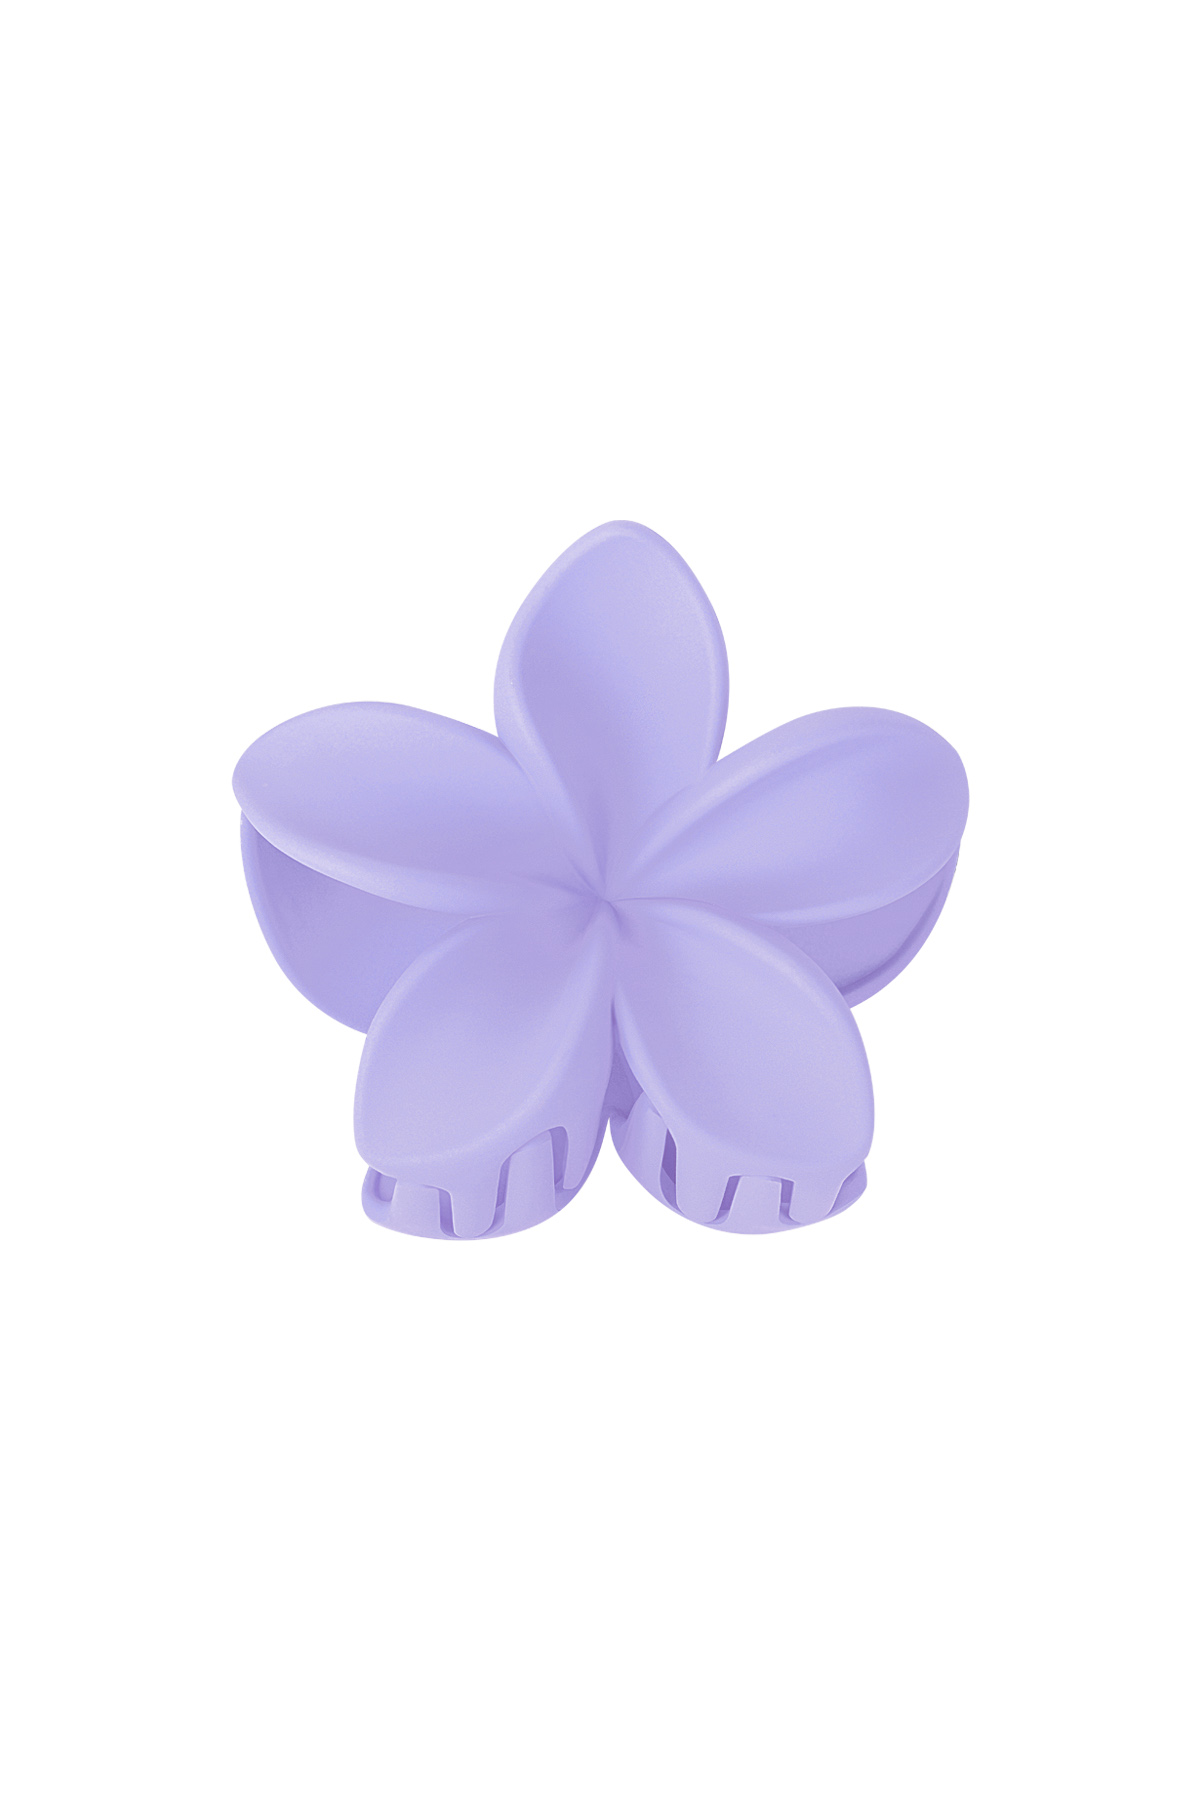 Haarspange Blume - lila Kunststoff 